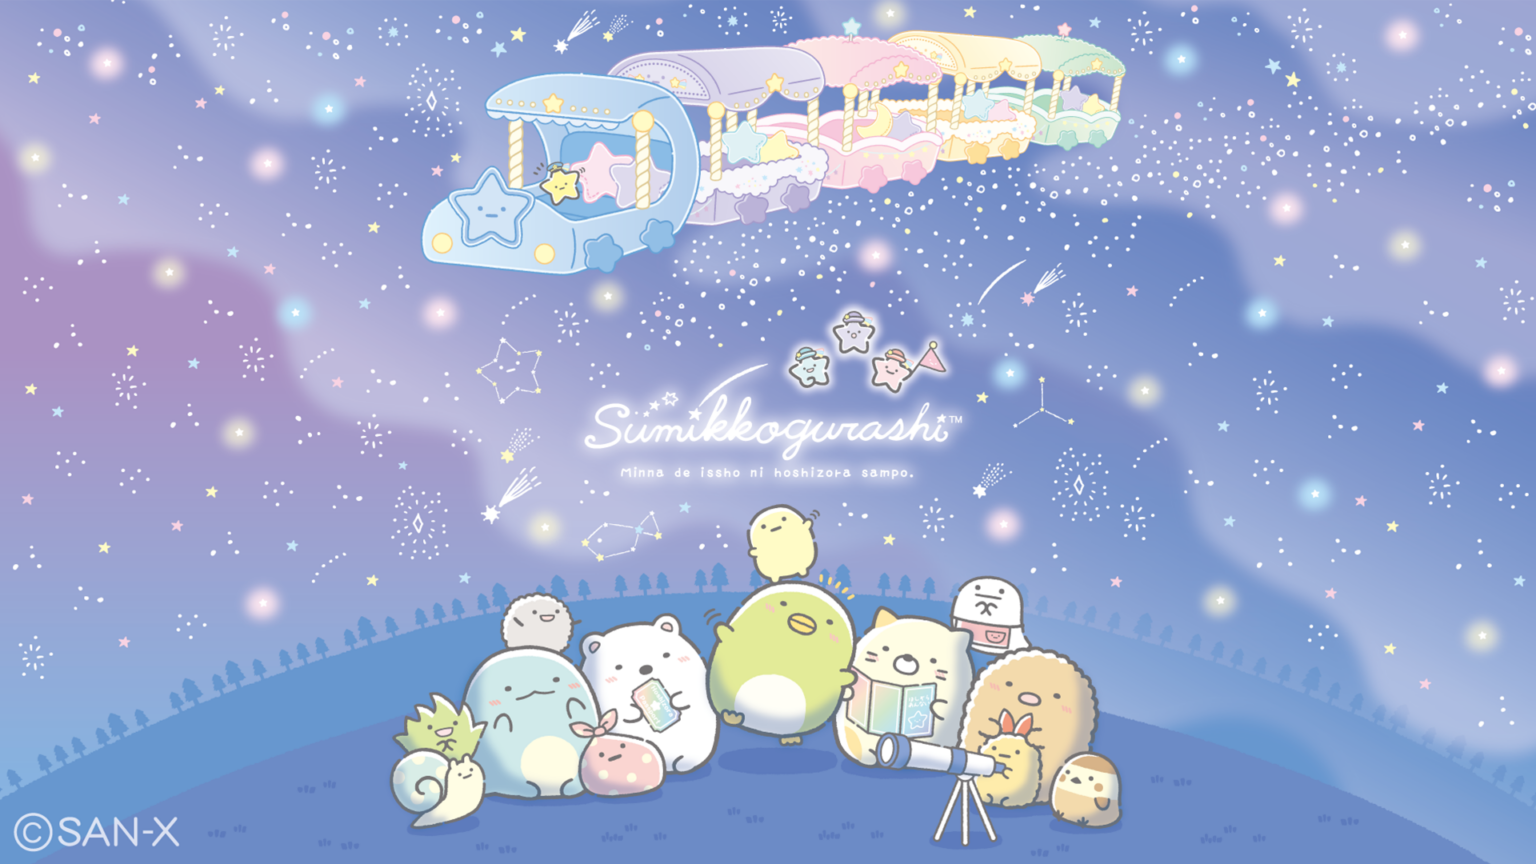 Sumikko Gurashi Nighttime Star Train Wallpaper for Desktop + Mobile